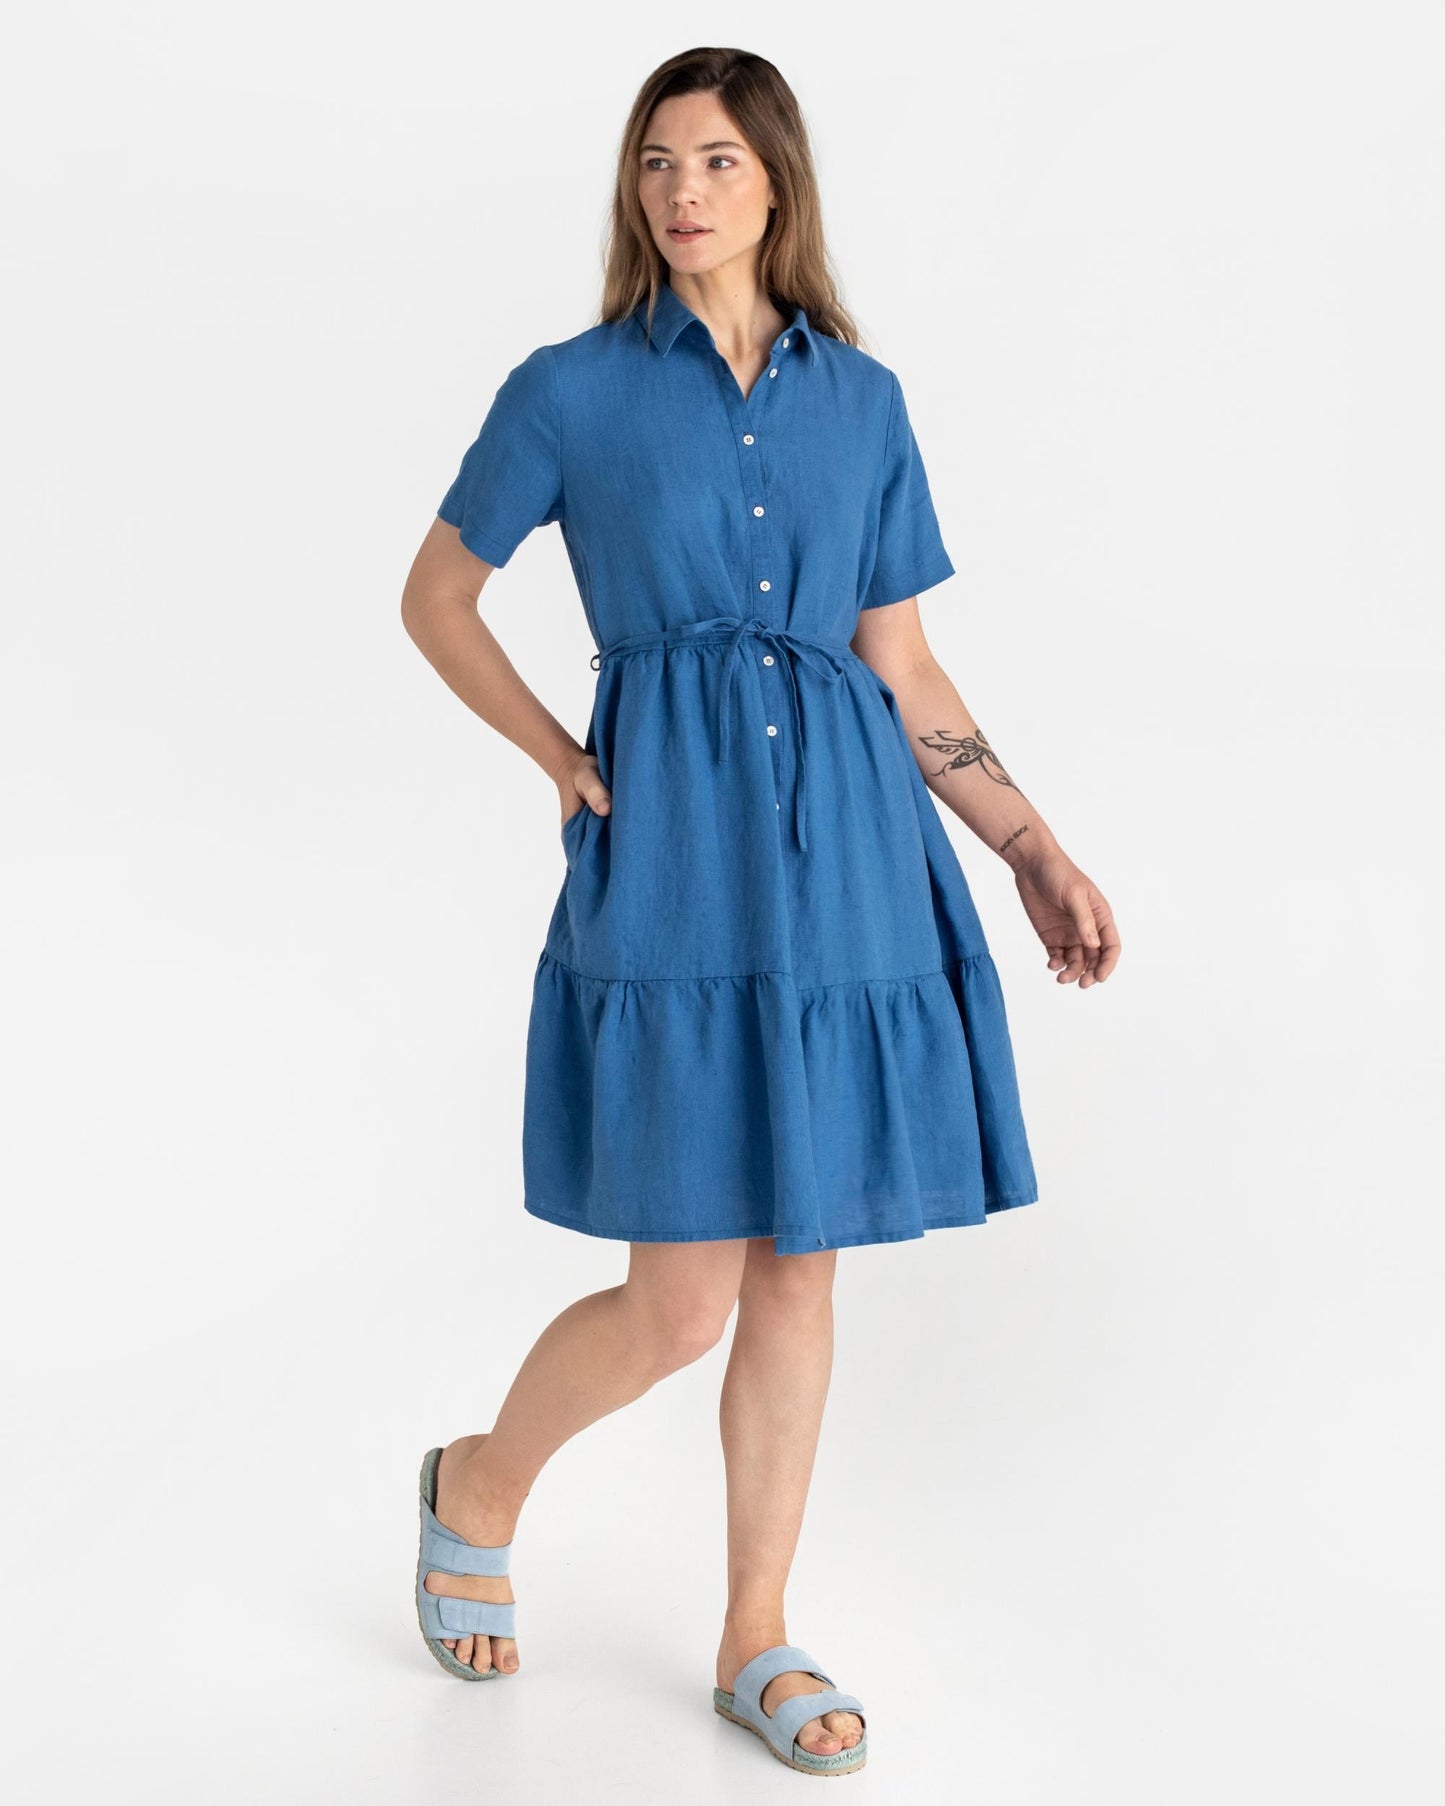 Tiered linen dress PETRA in Cobalt blue - MagicLinen modelBoxOn